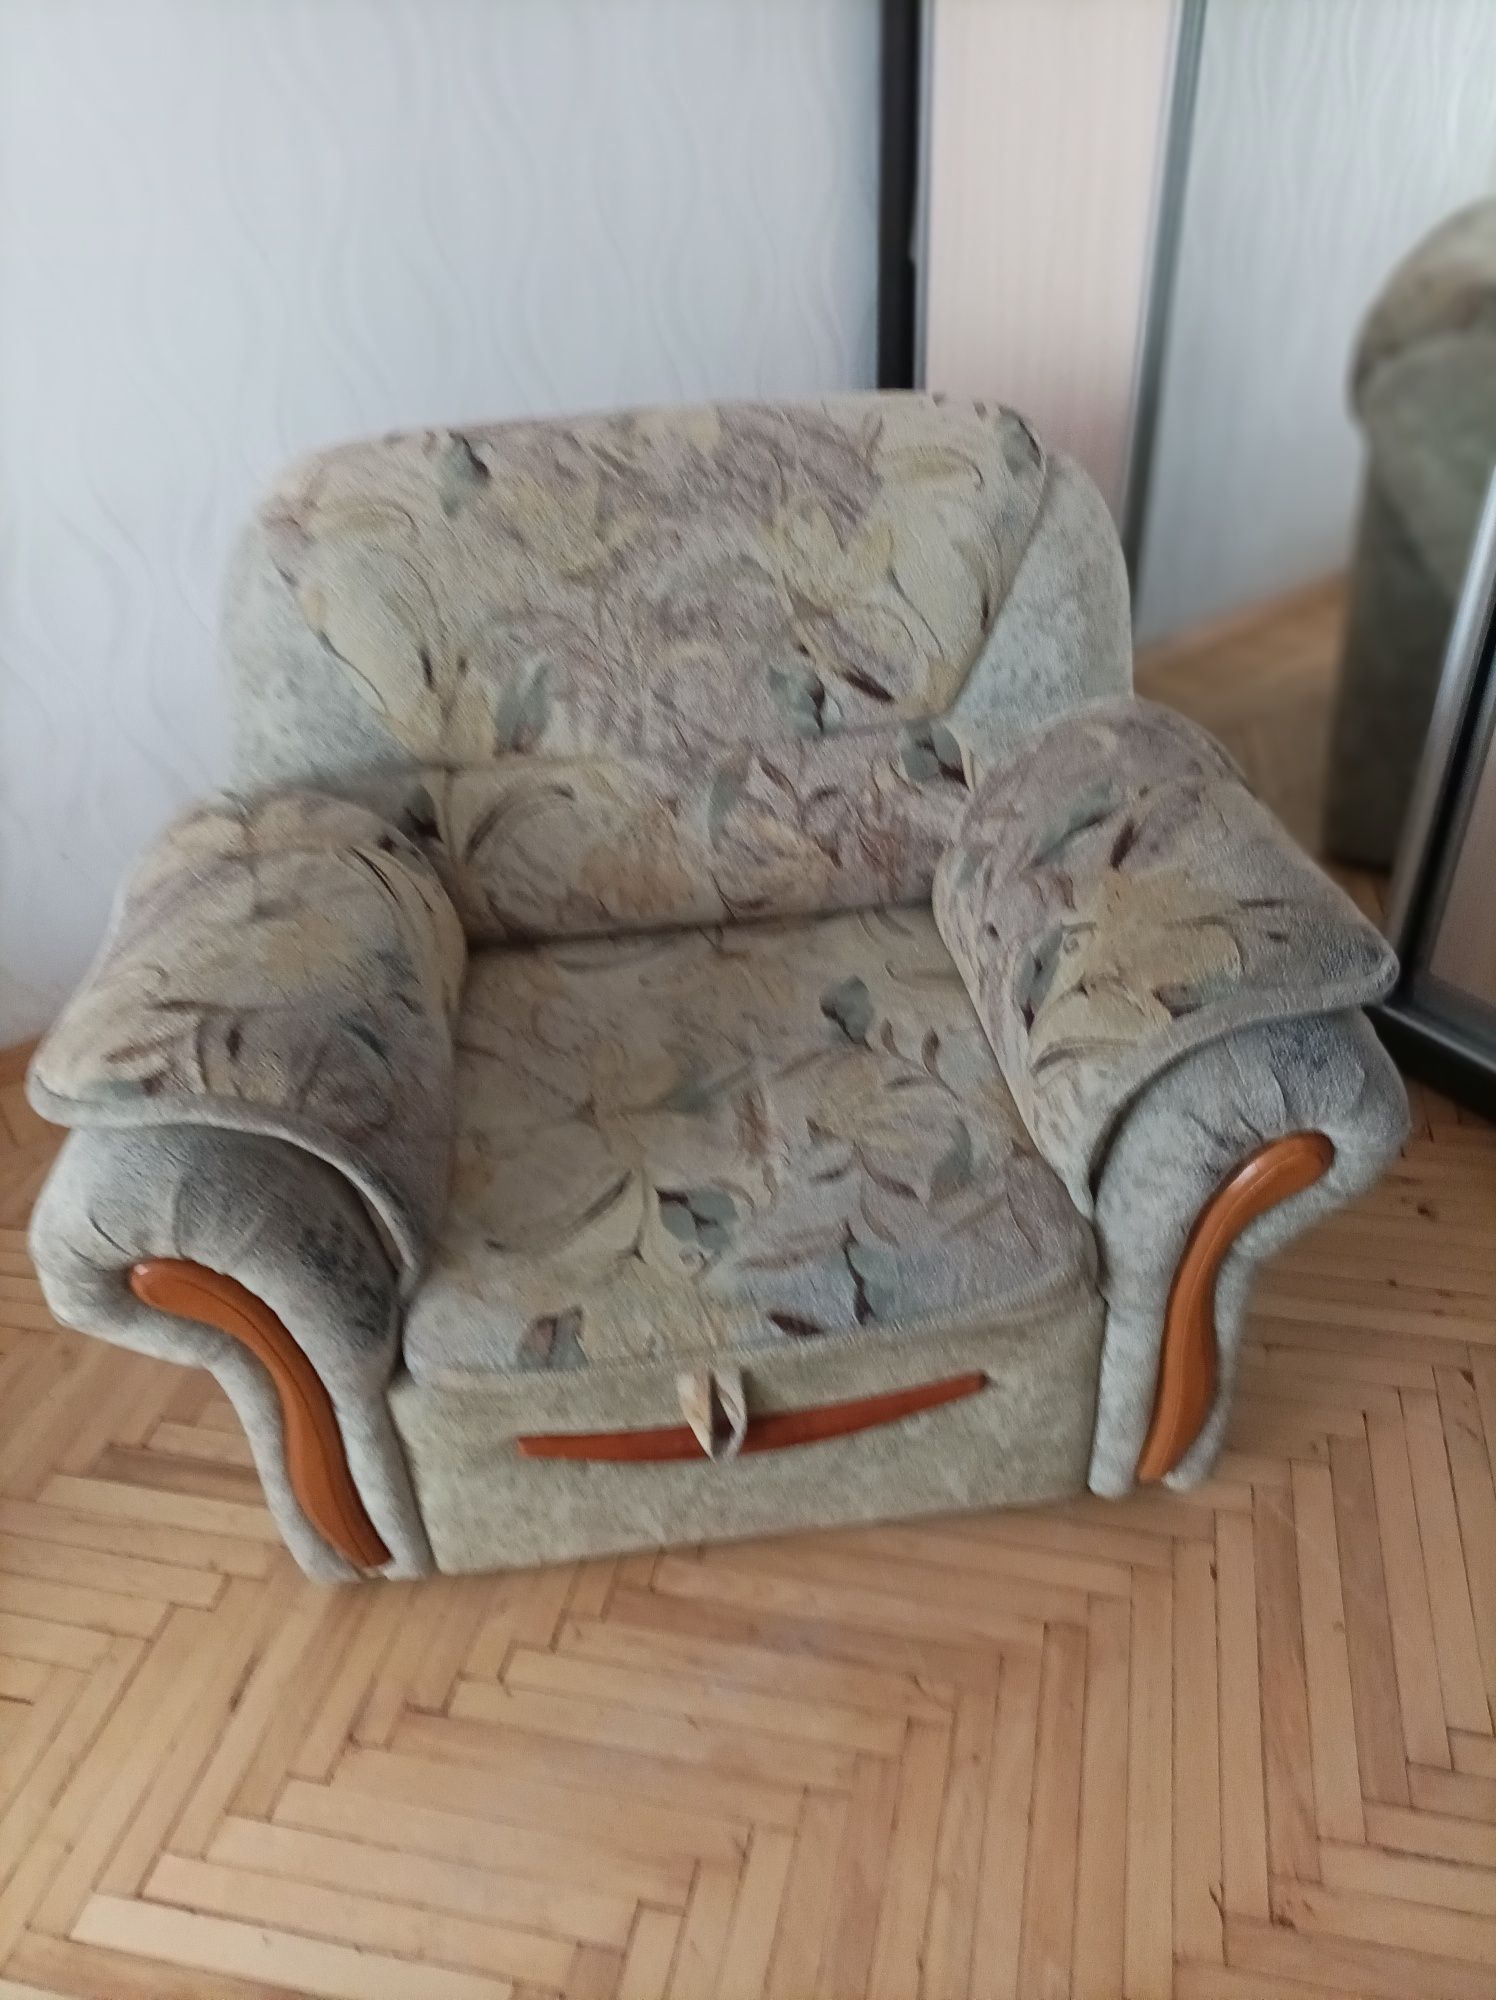 Продается кресло кровать, в хорошем состоянии, находится в г. Харьков